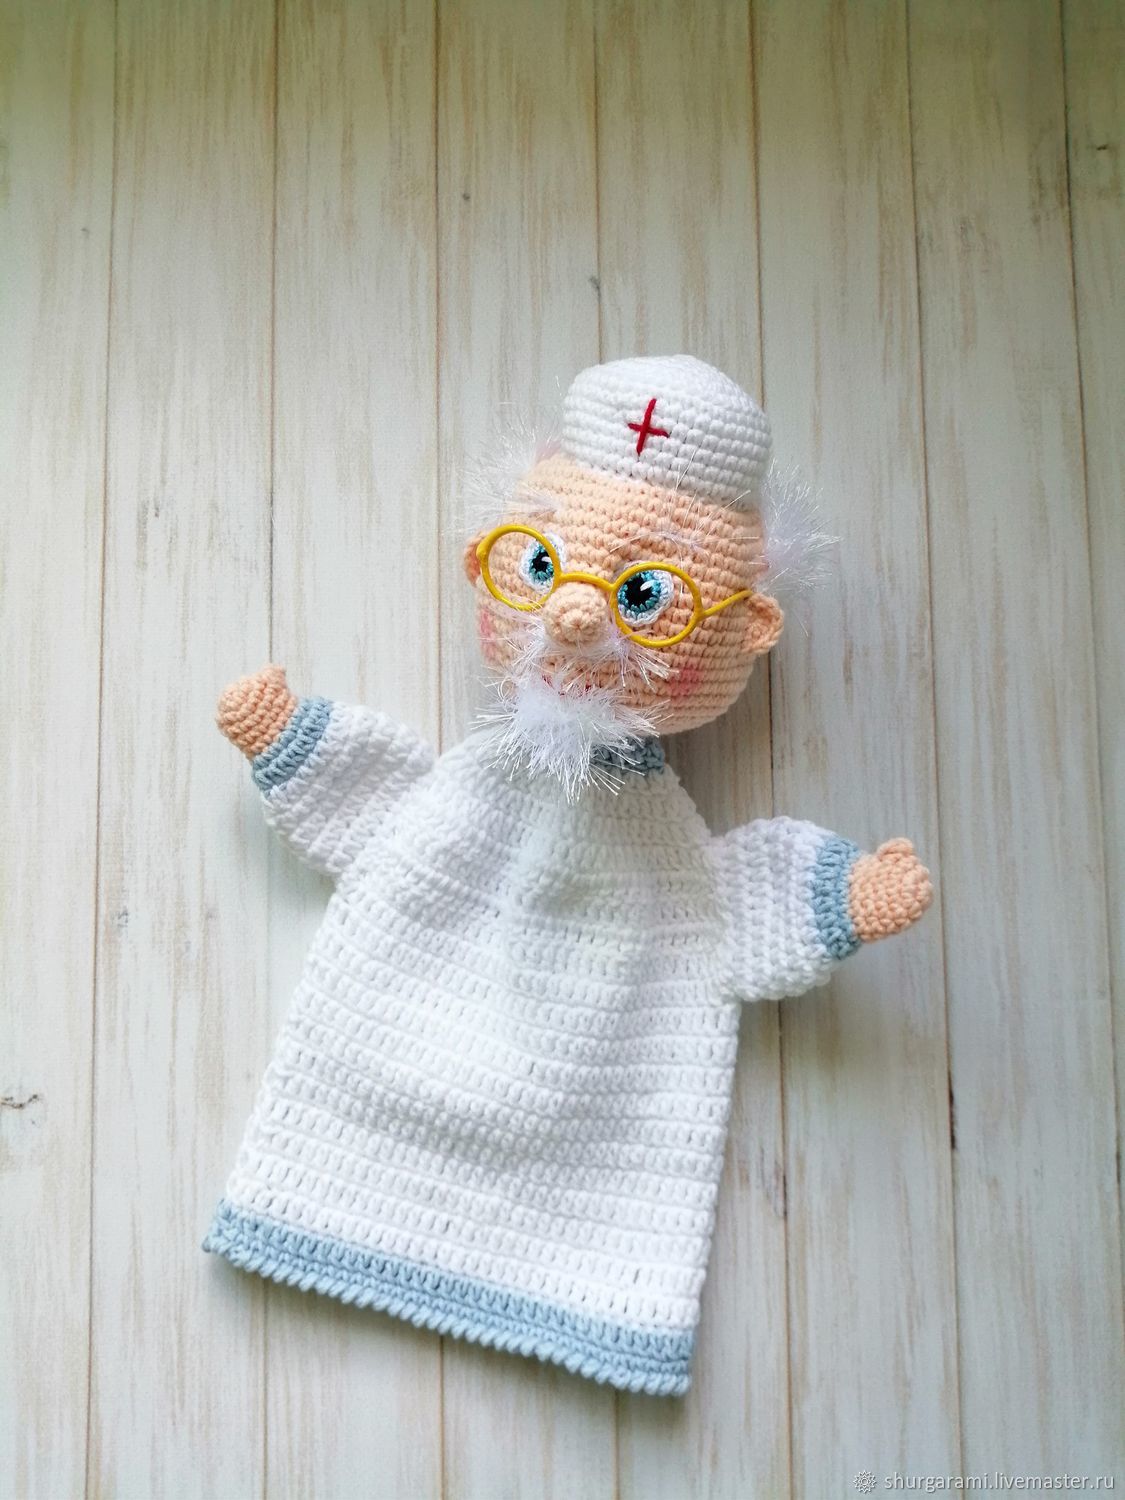 Кукольный театр «Перчаточная кукла Доктор Айболит» купить в интернет-магазине в Москве